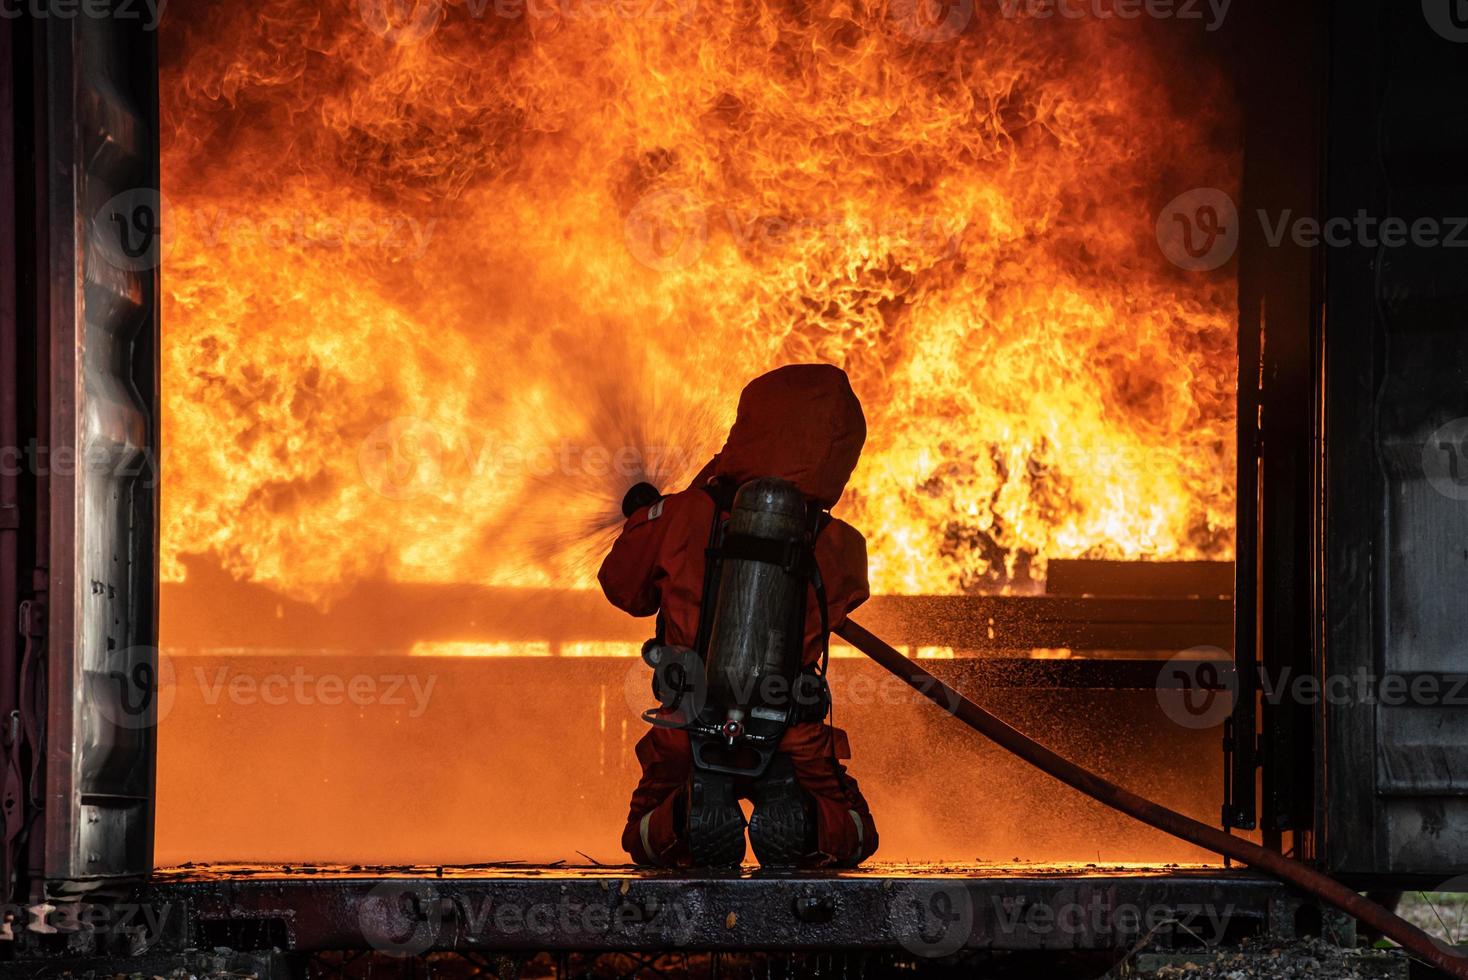 Feuerwehrrettungstraining zum Stoppen der brennenden Flamme, Feuerwehrmann trägt einen Schutzhelm und einen einheitlichen Sicherheitsanzug zum Schutz vor Verbrennungen mit einem Schlauch mit chemischem Wasserschaumspray. foto